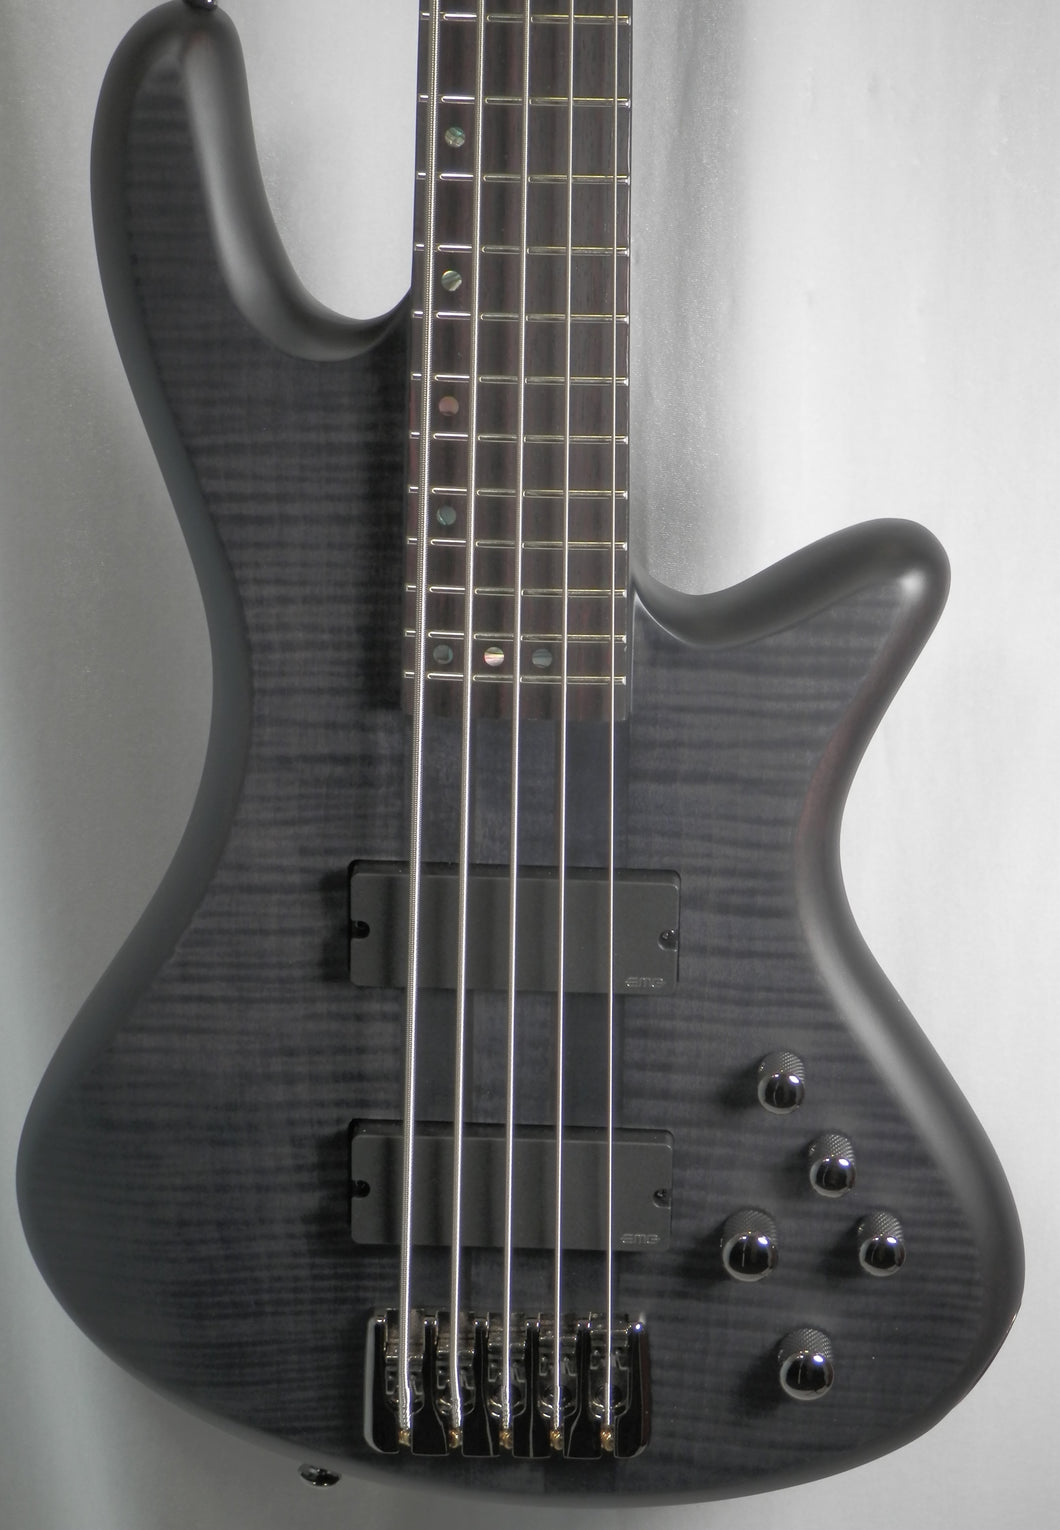 Schecter Stiletto Studio-5 STBLS See-Thru Black Satin Flamed Maple Top 5-string Bass Model # 2721